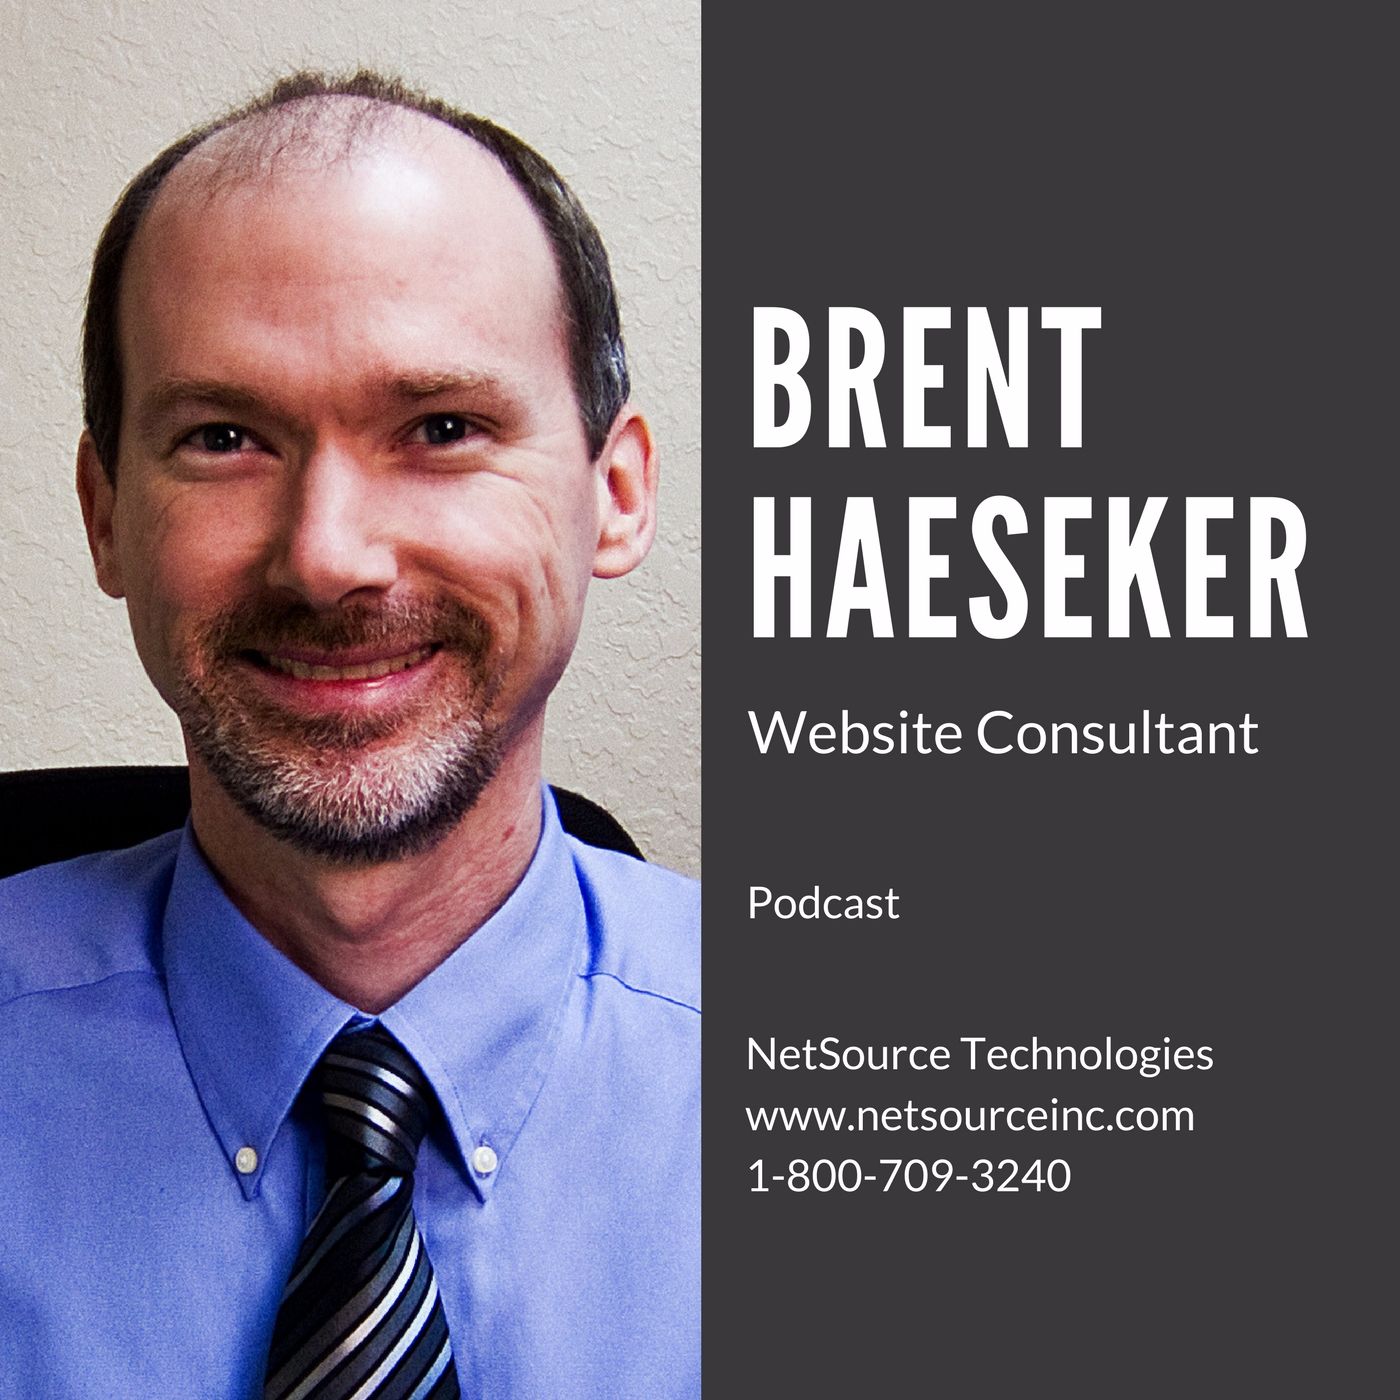 Brent Haeseker - Website Consultant